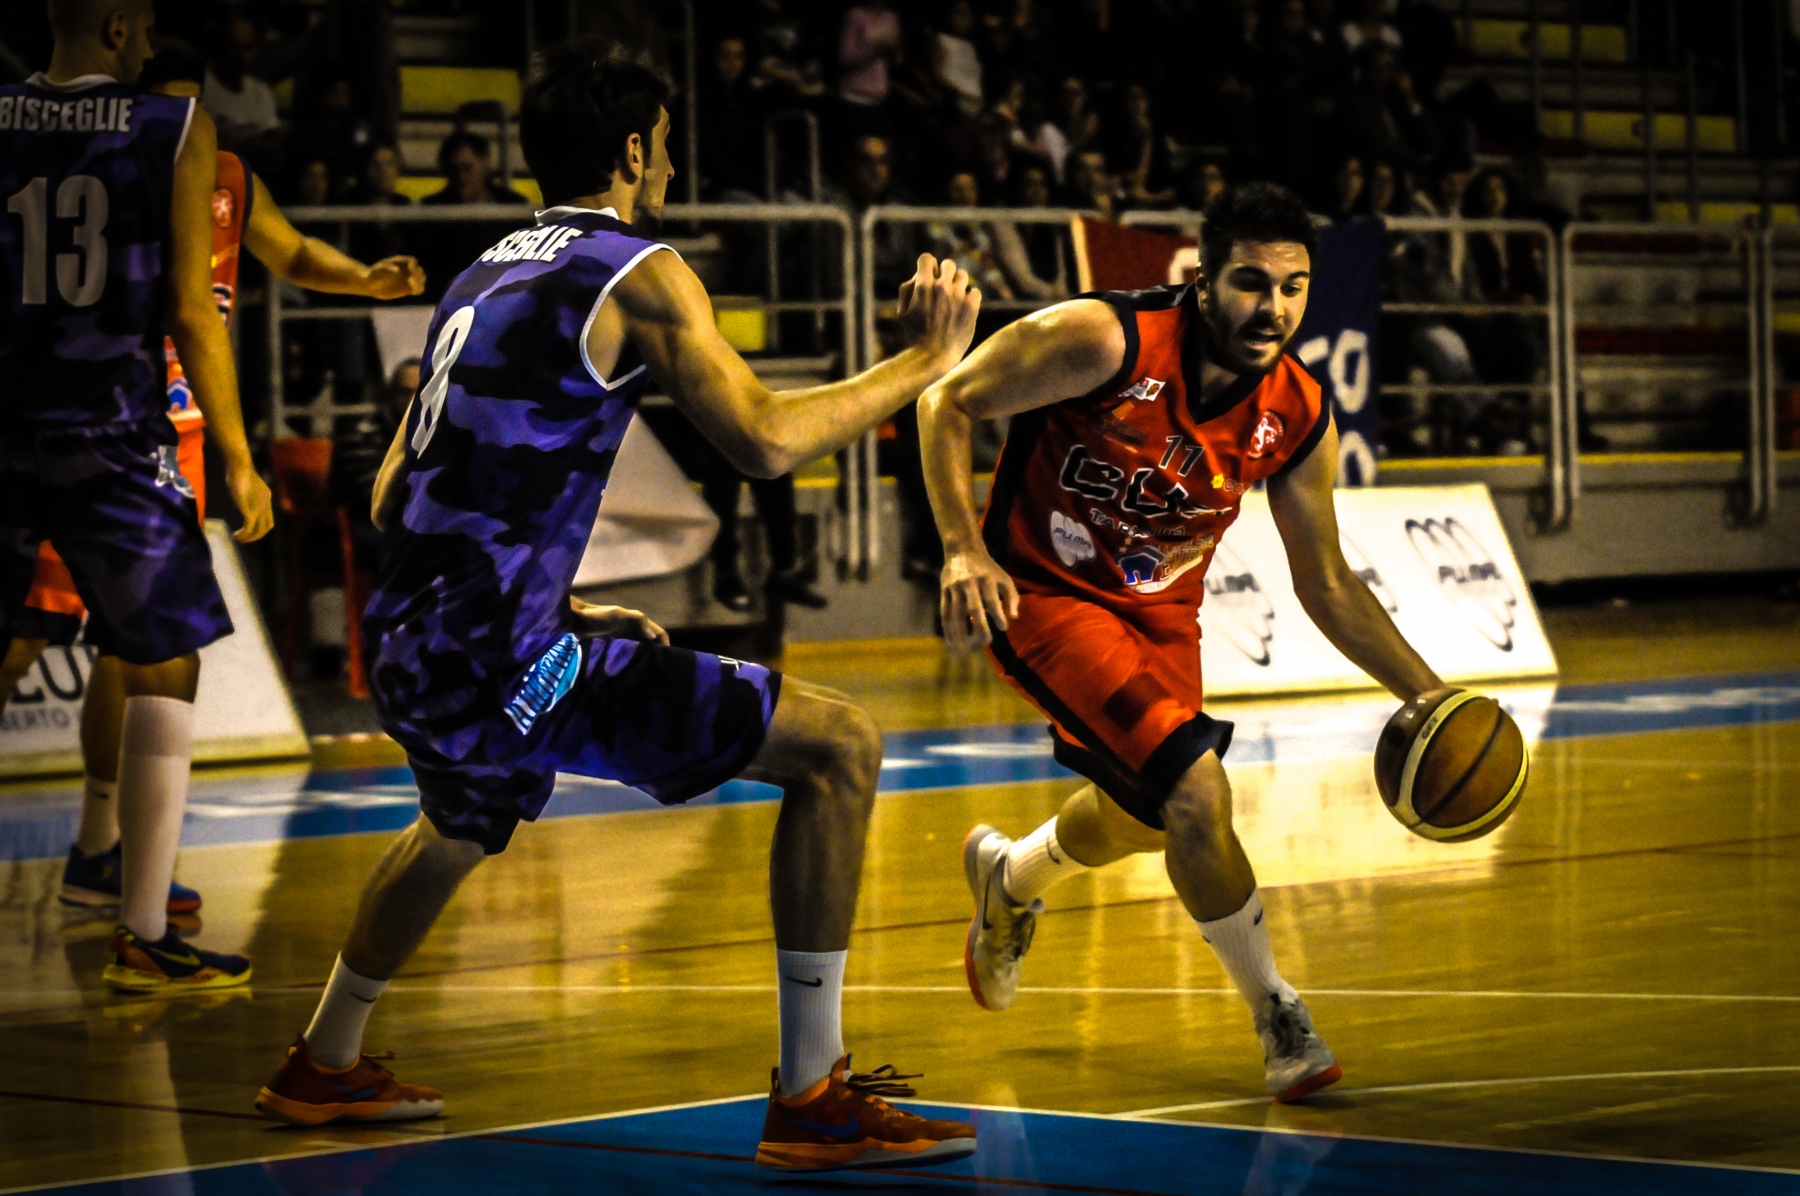 A Lions Basket Bisceglie